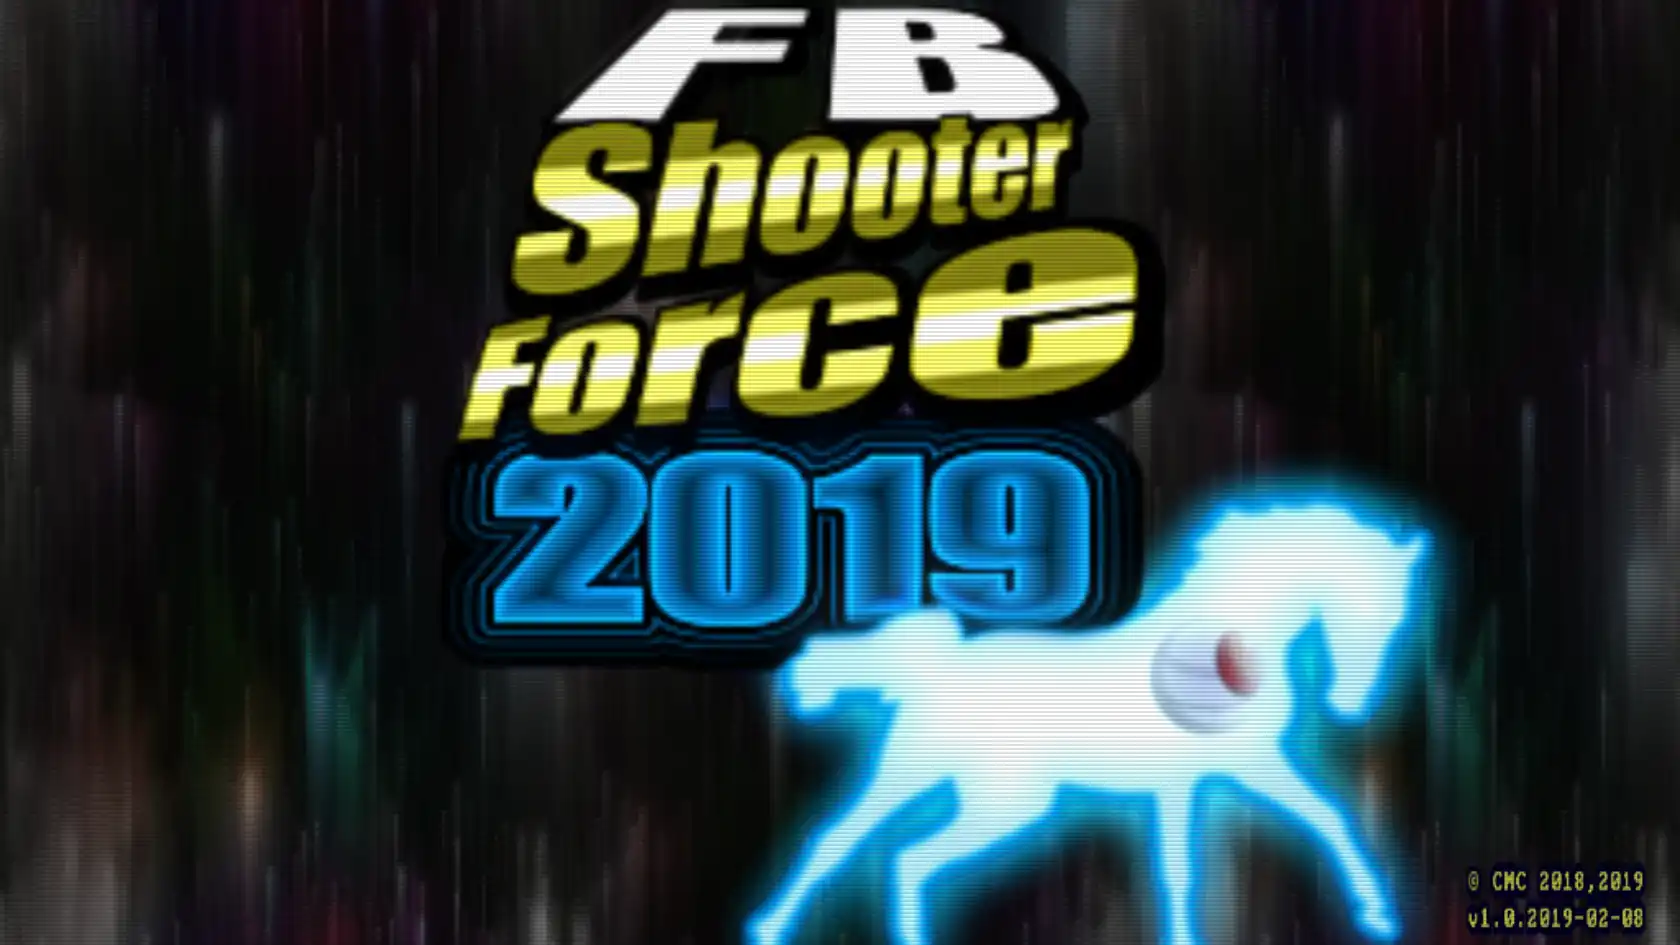 Muat turun alat web atau aplikasi web FB Shooter Force 2019 untuk dijalankan di Linux dalam talian